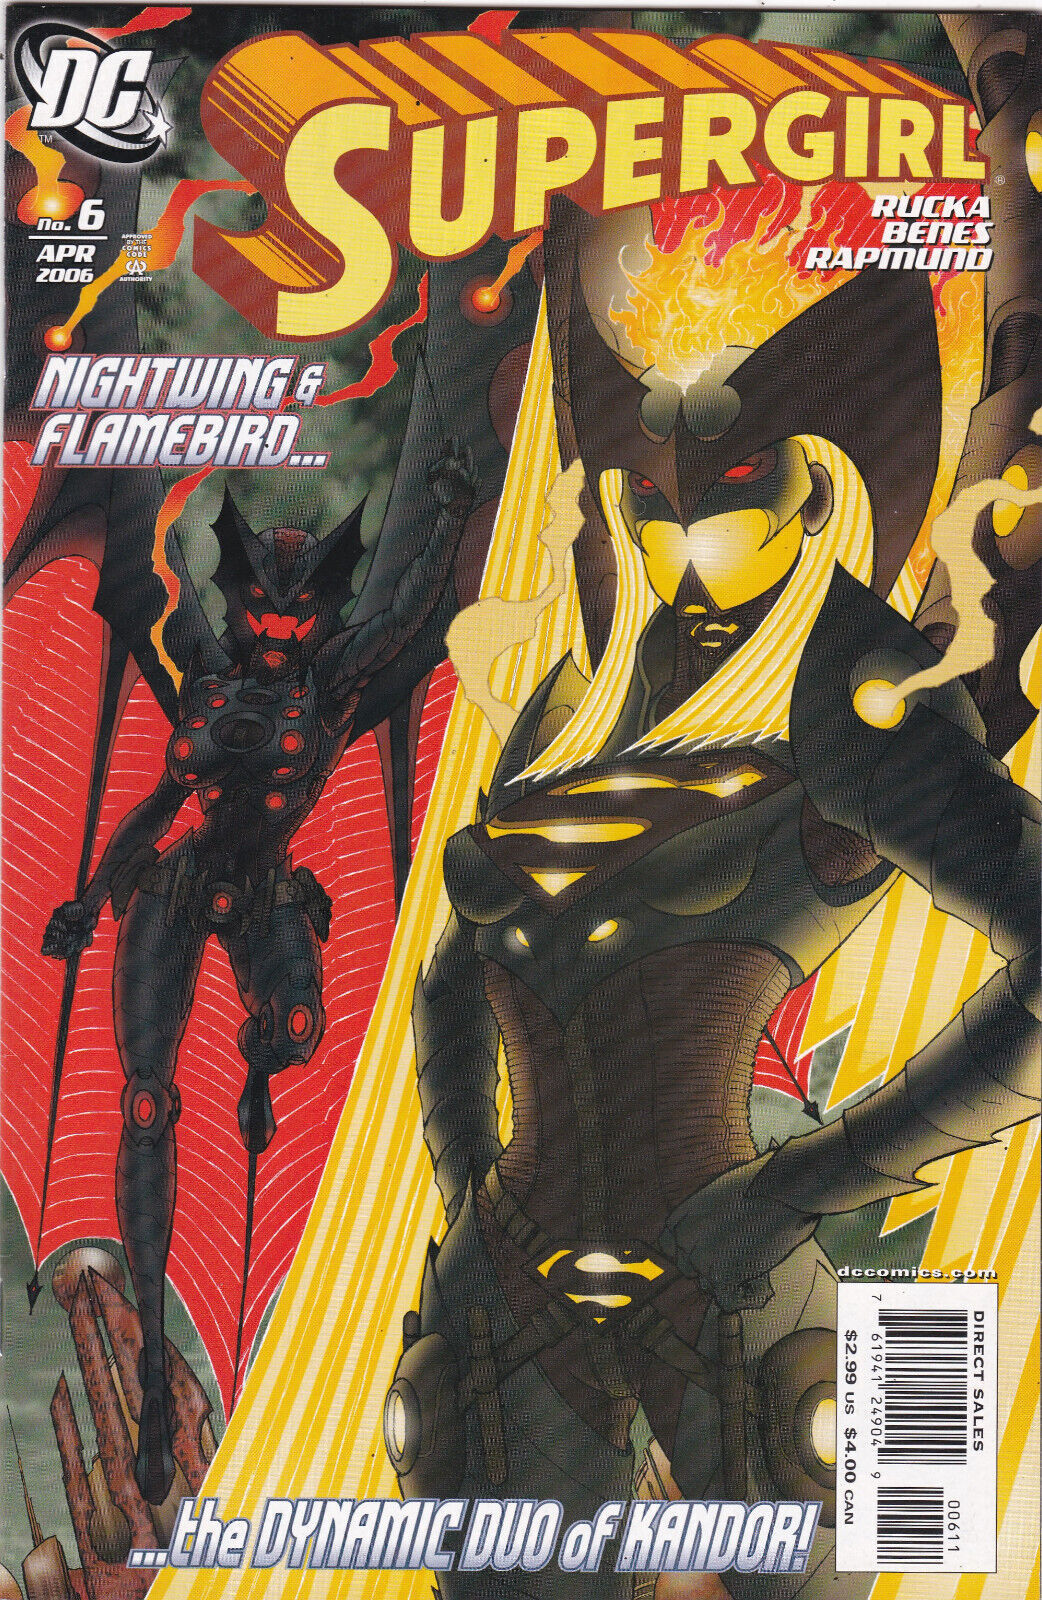 Supergirl #6, Vol. 5 (2005-2011) DC Comics, High Grade